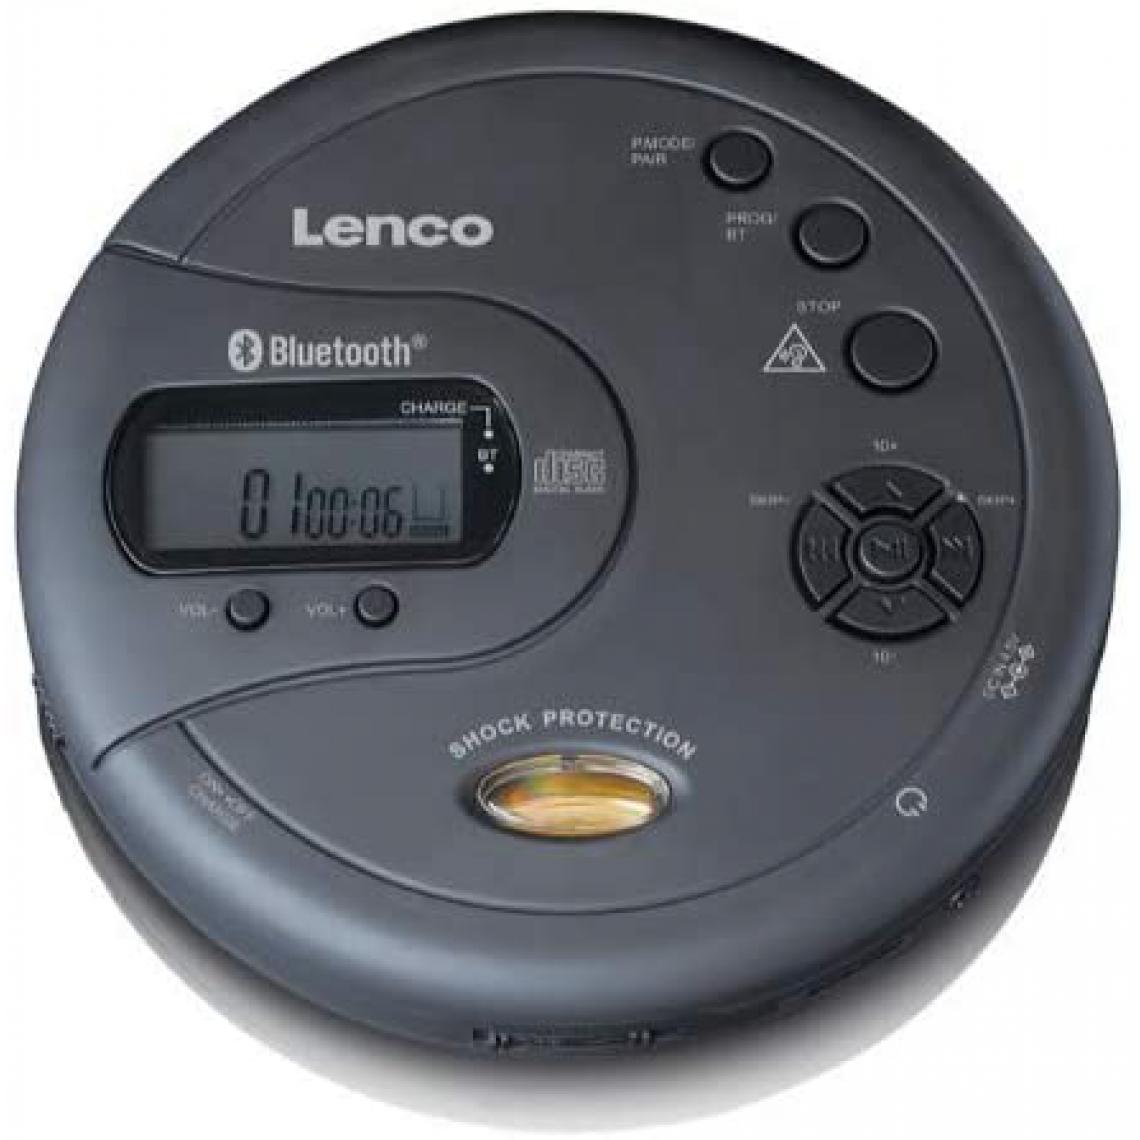 Lenco - lecteur CD Portable MP3 BLUETOOTH Antichoc noir - Radio, lecteur CD/MP3 enfant